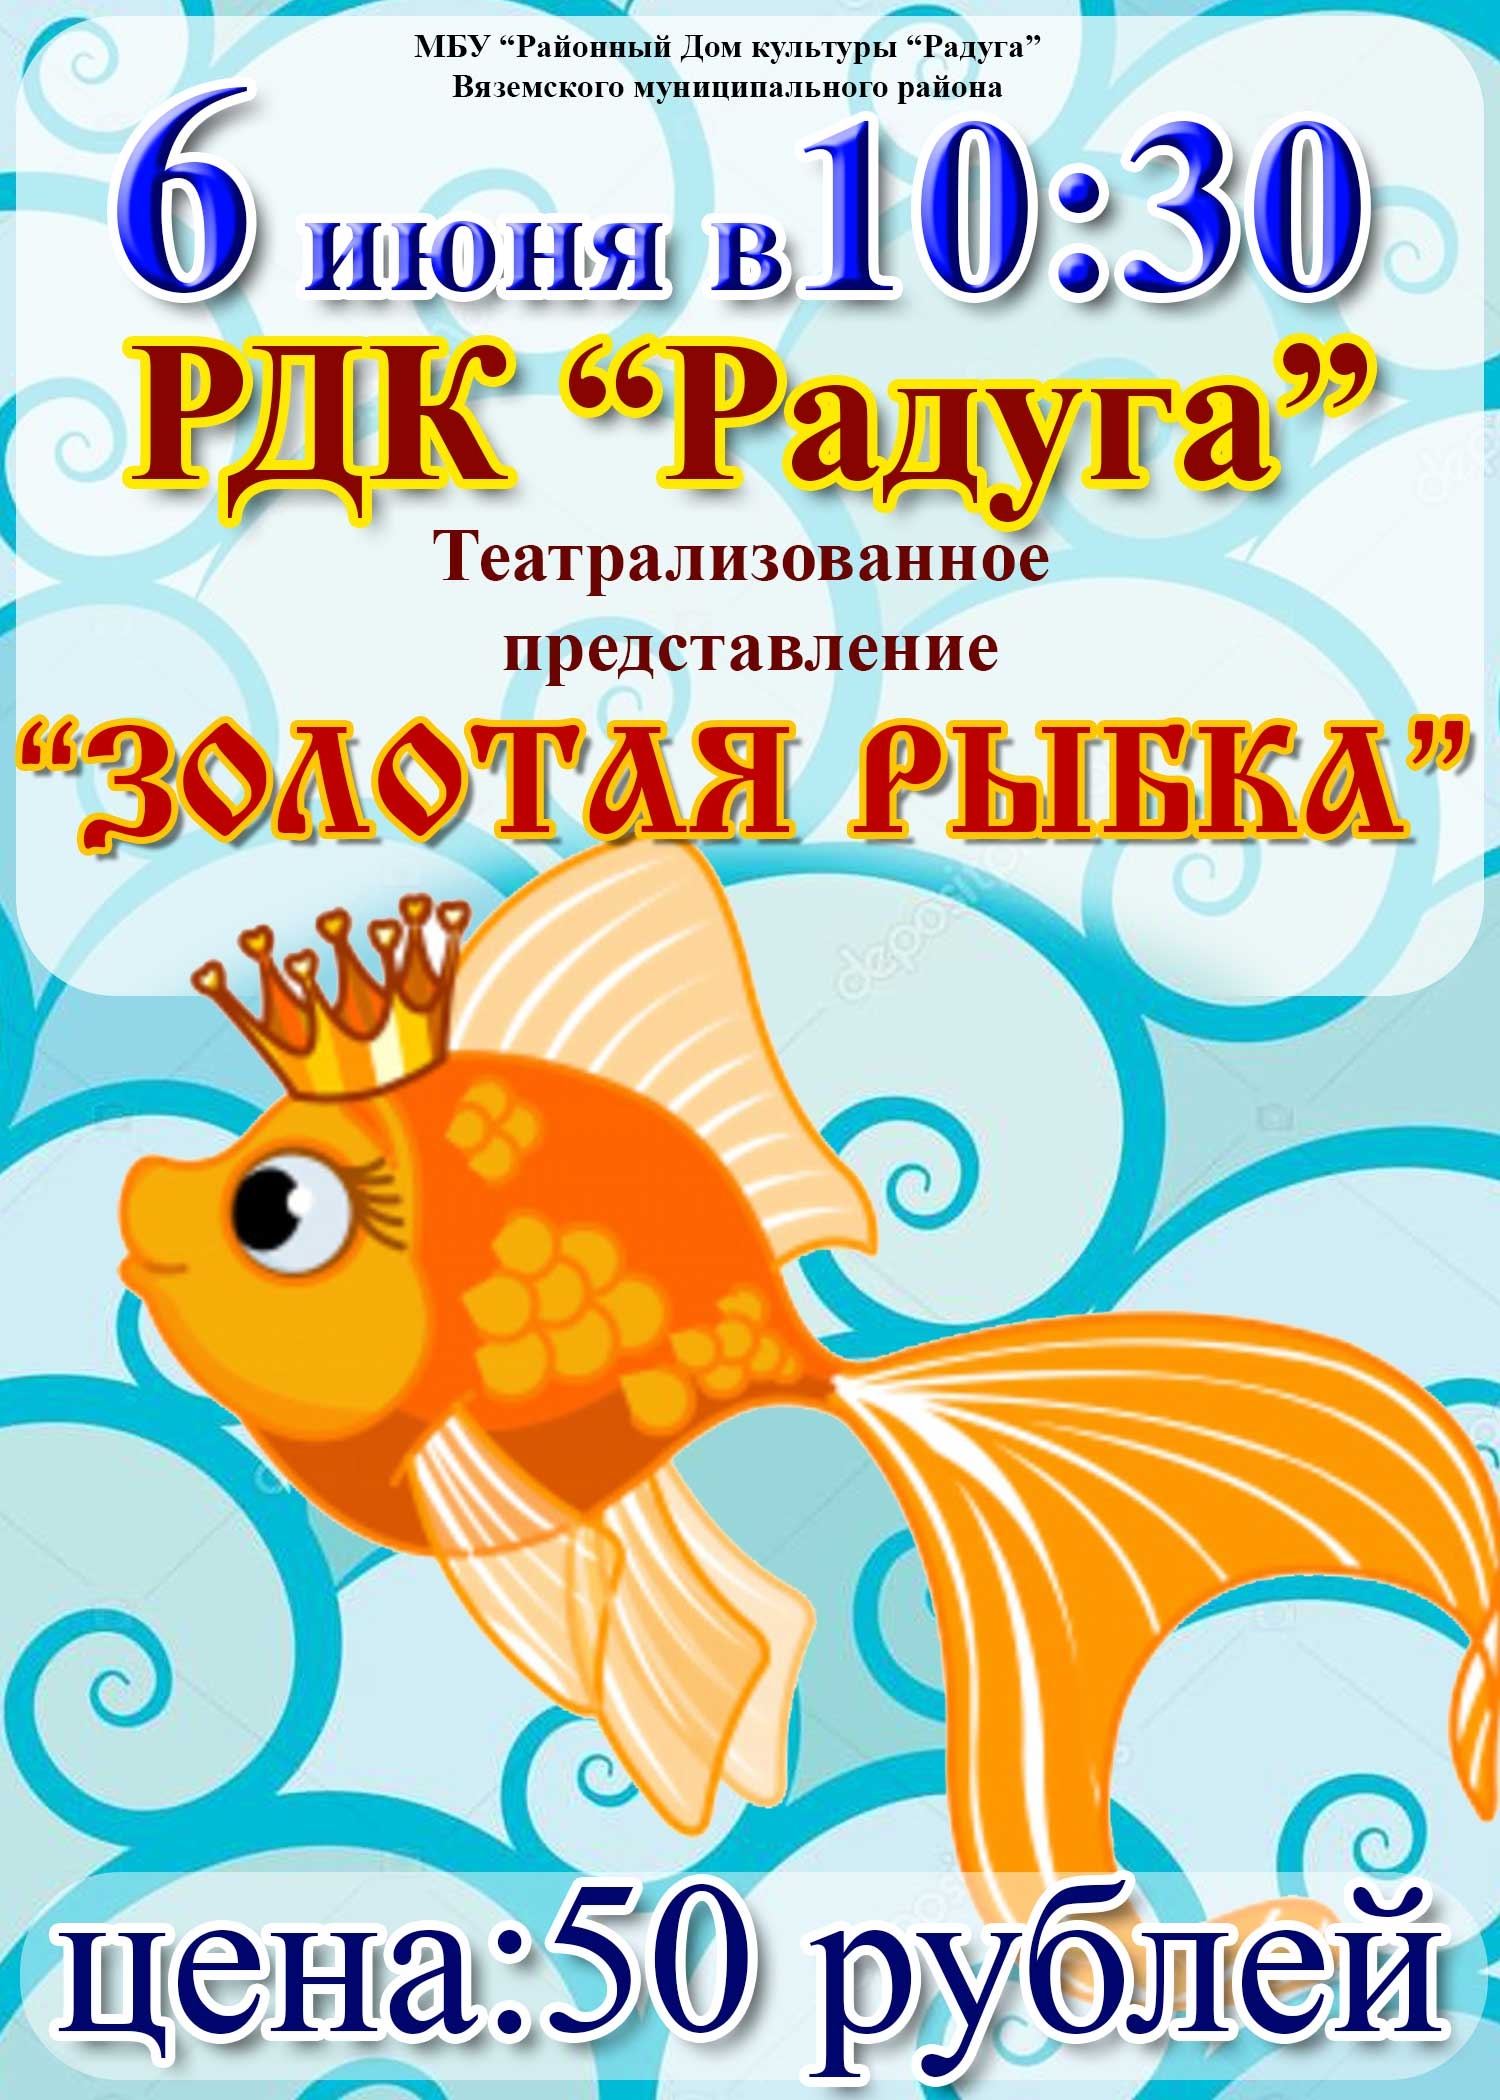 Афиша спектаклей для детей в Минске